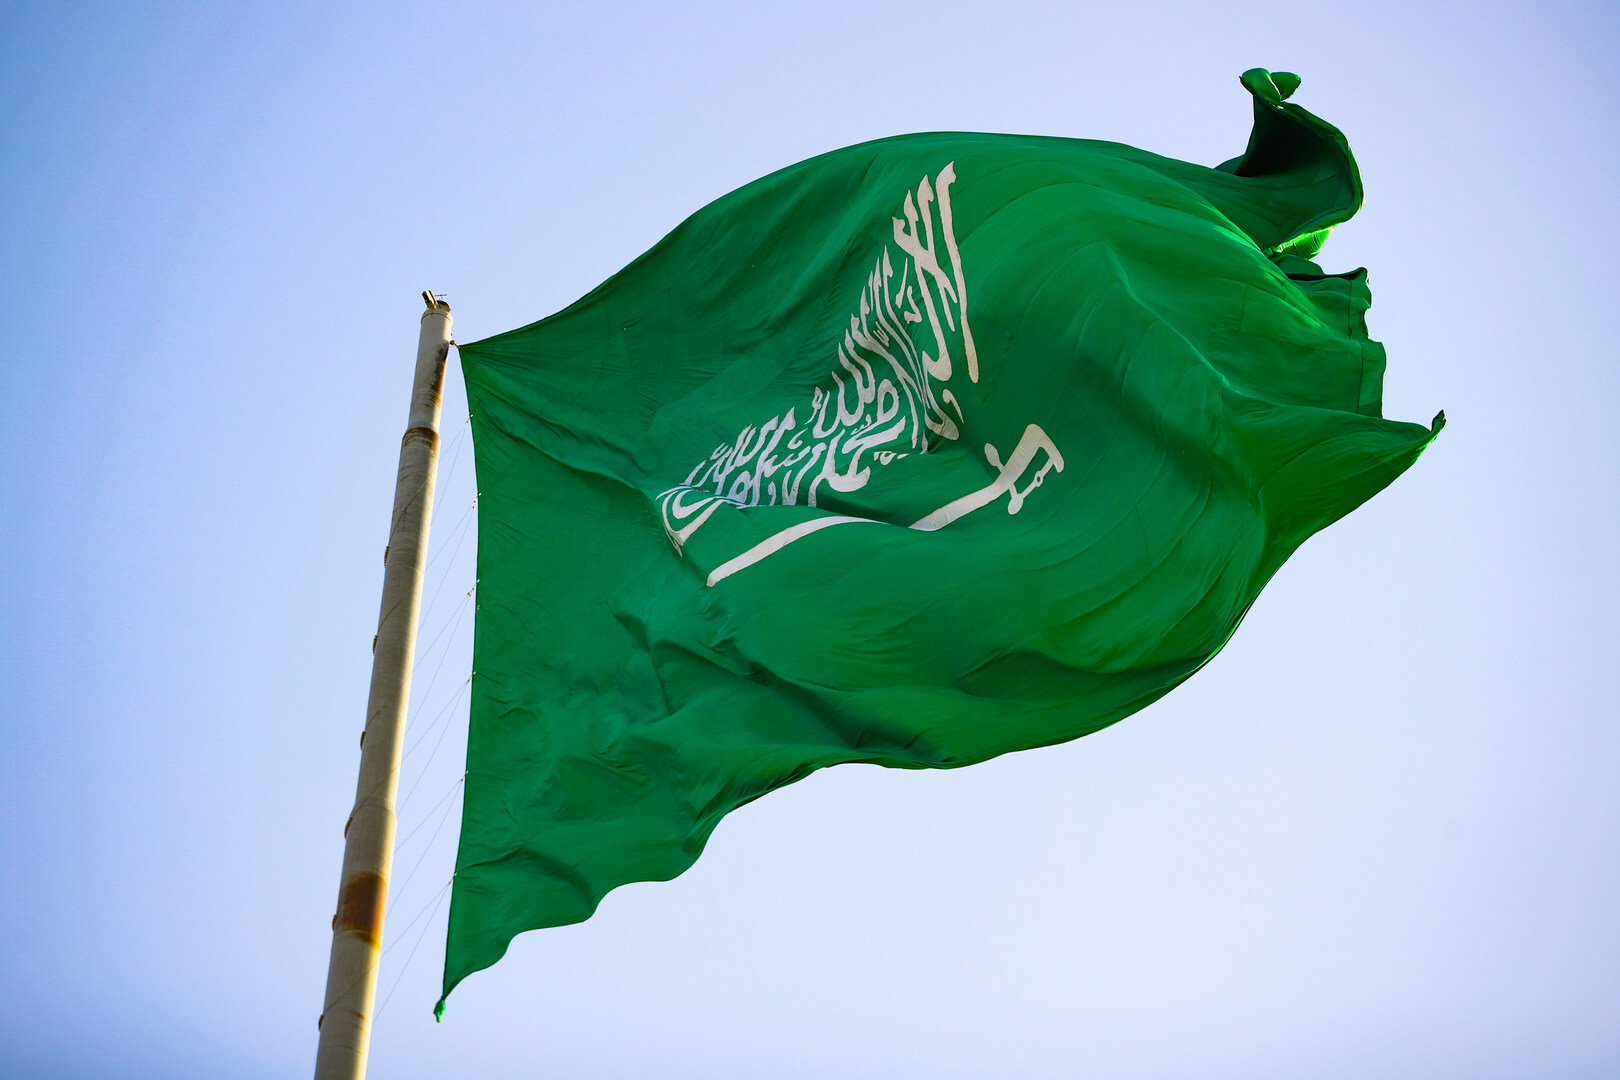 السعودية تعلن عن فتح قضايا جنائية بحق موظفين في وزارات المملكة بينها الدفاع والداخلية